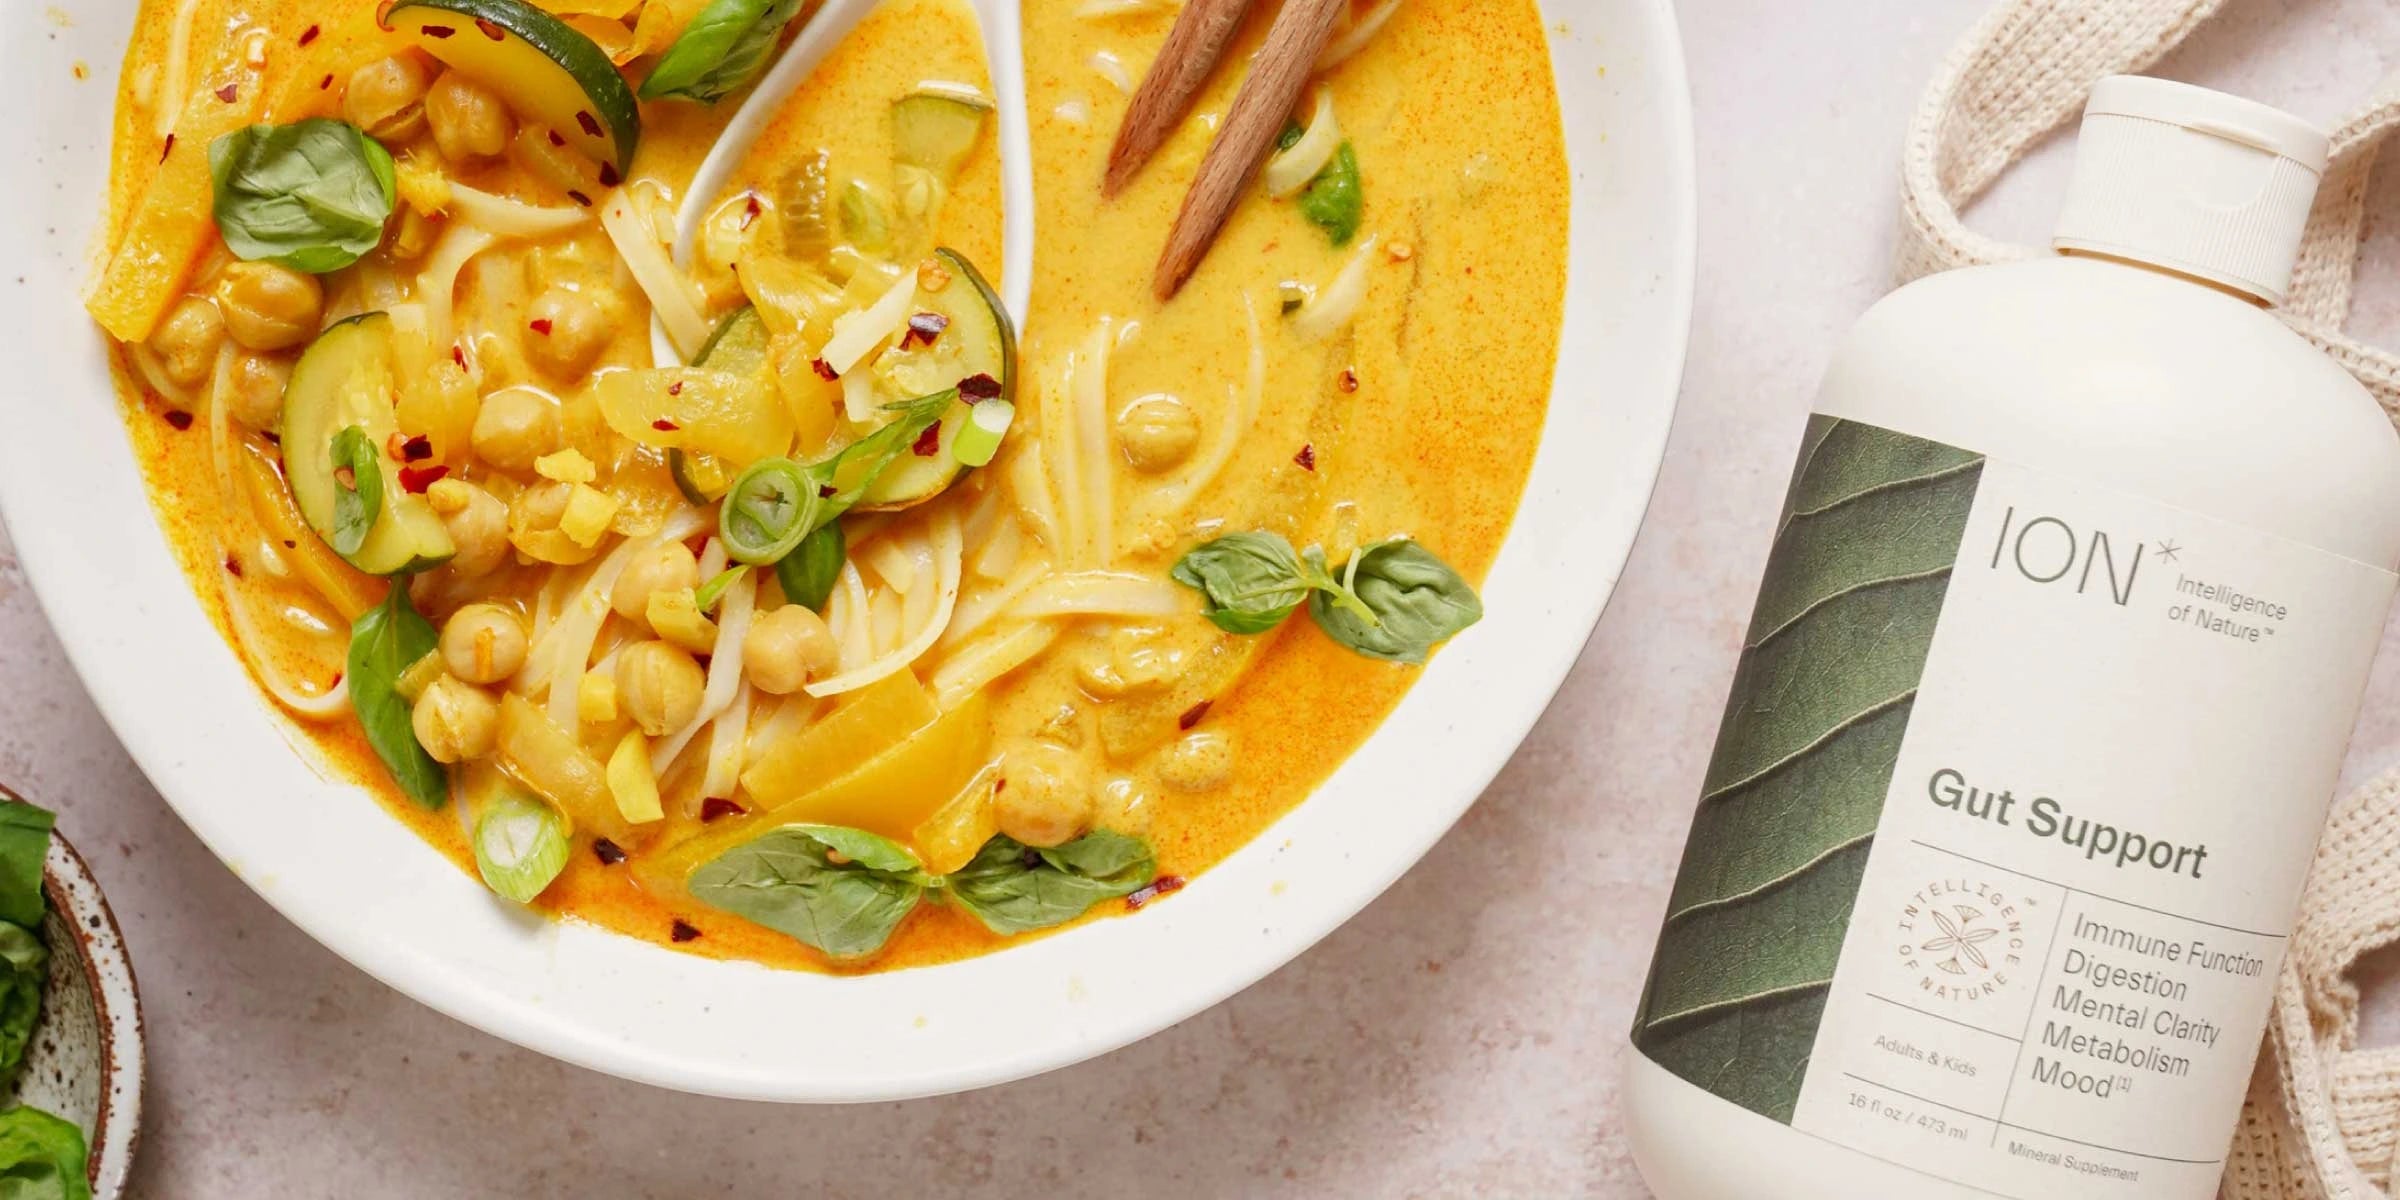 Gut friendly Thai Noodle Soup with ION